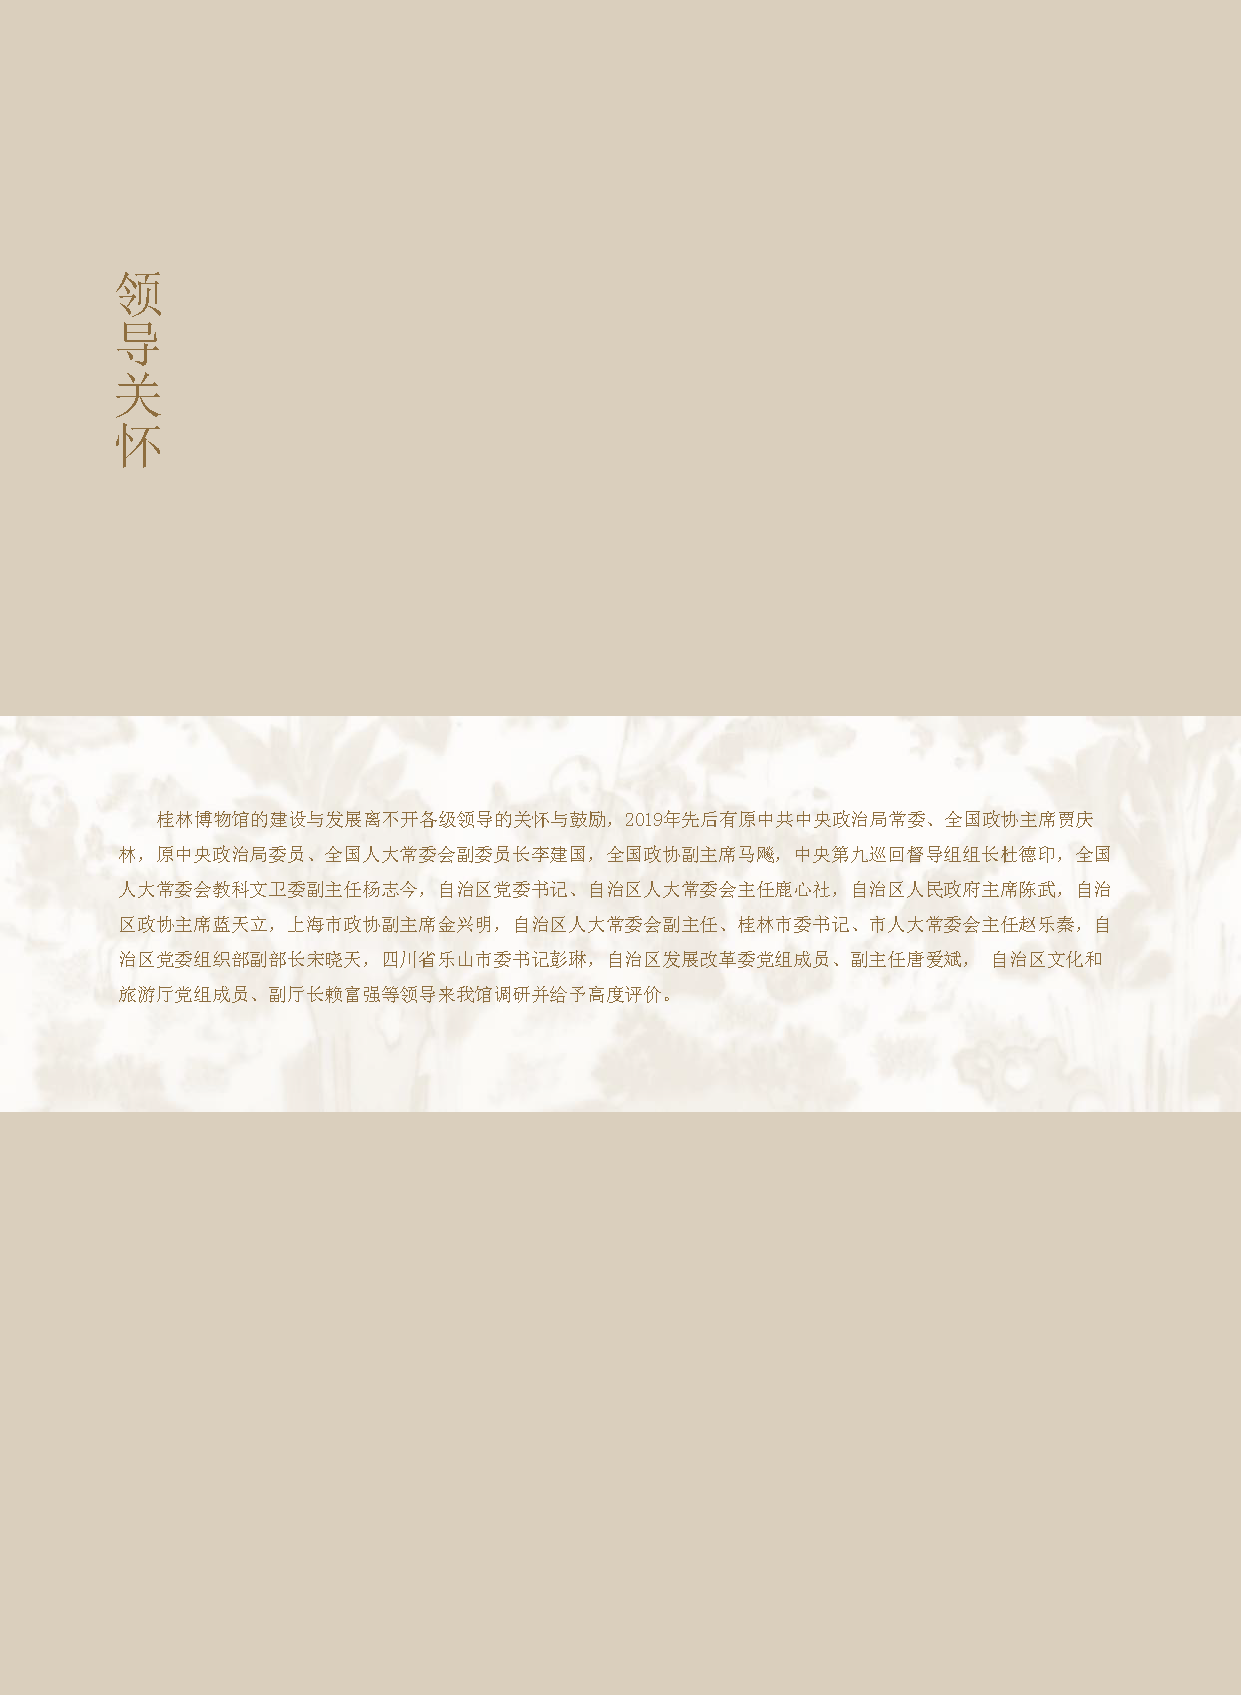 桂林博物馆2019年度报告.pdf_页面_004.png